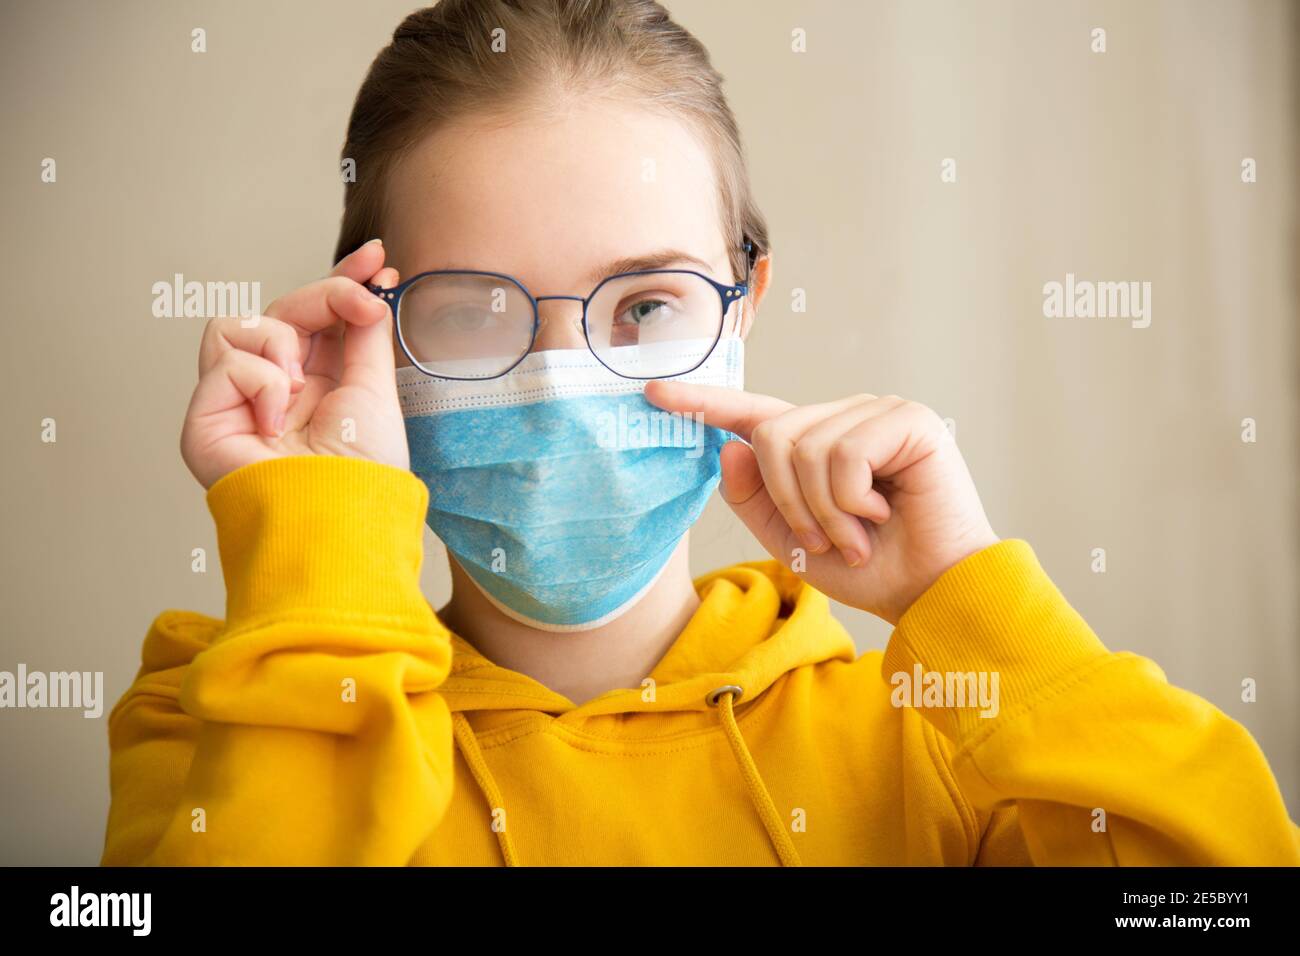 Neblige Brille trägt auf junge Frau. Teenager-Mädchen in medizinischen Schutz Gesichtsmaske und Brillen wischt verschwommen neblig vernebelte Gläser. Neuer Normalwert fällig Stockfoto